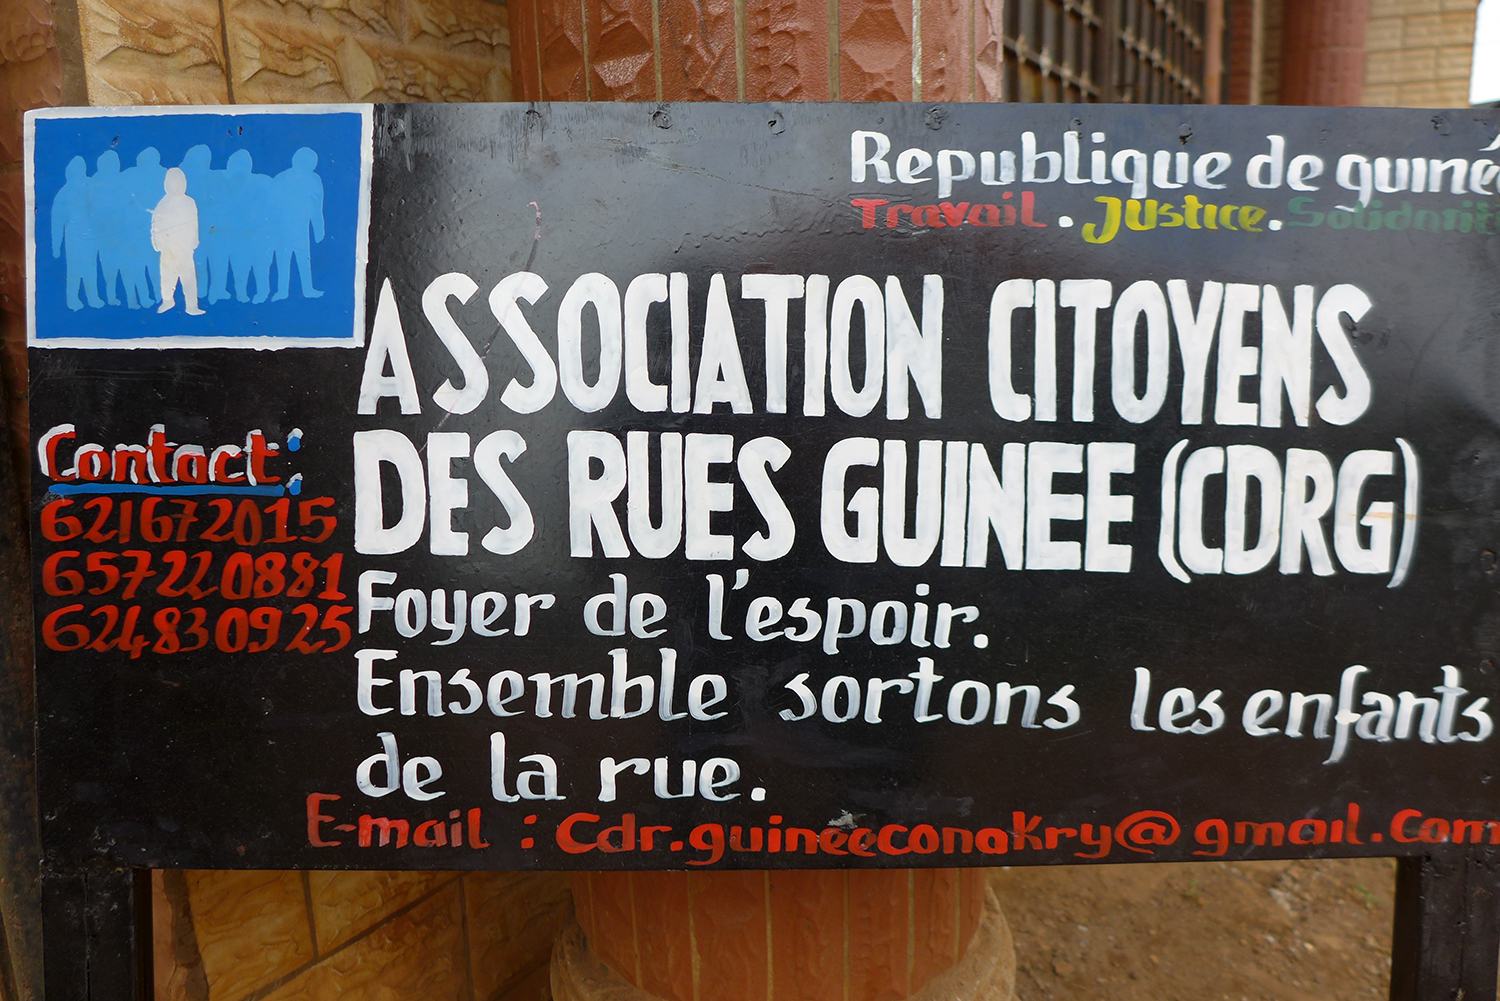 L’entrée du foyer de l’espoir de l’antenne guinéenne de l’association Citoyens des rues.